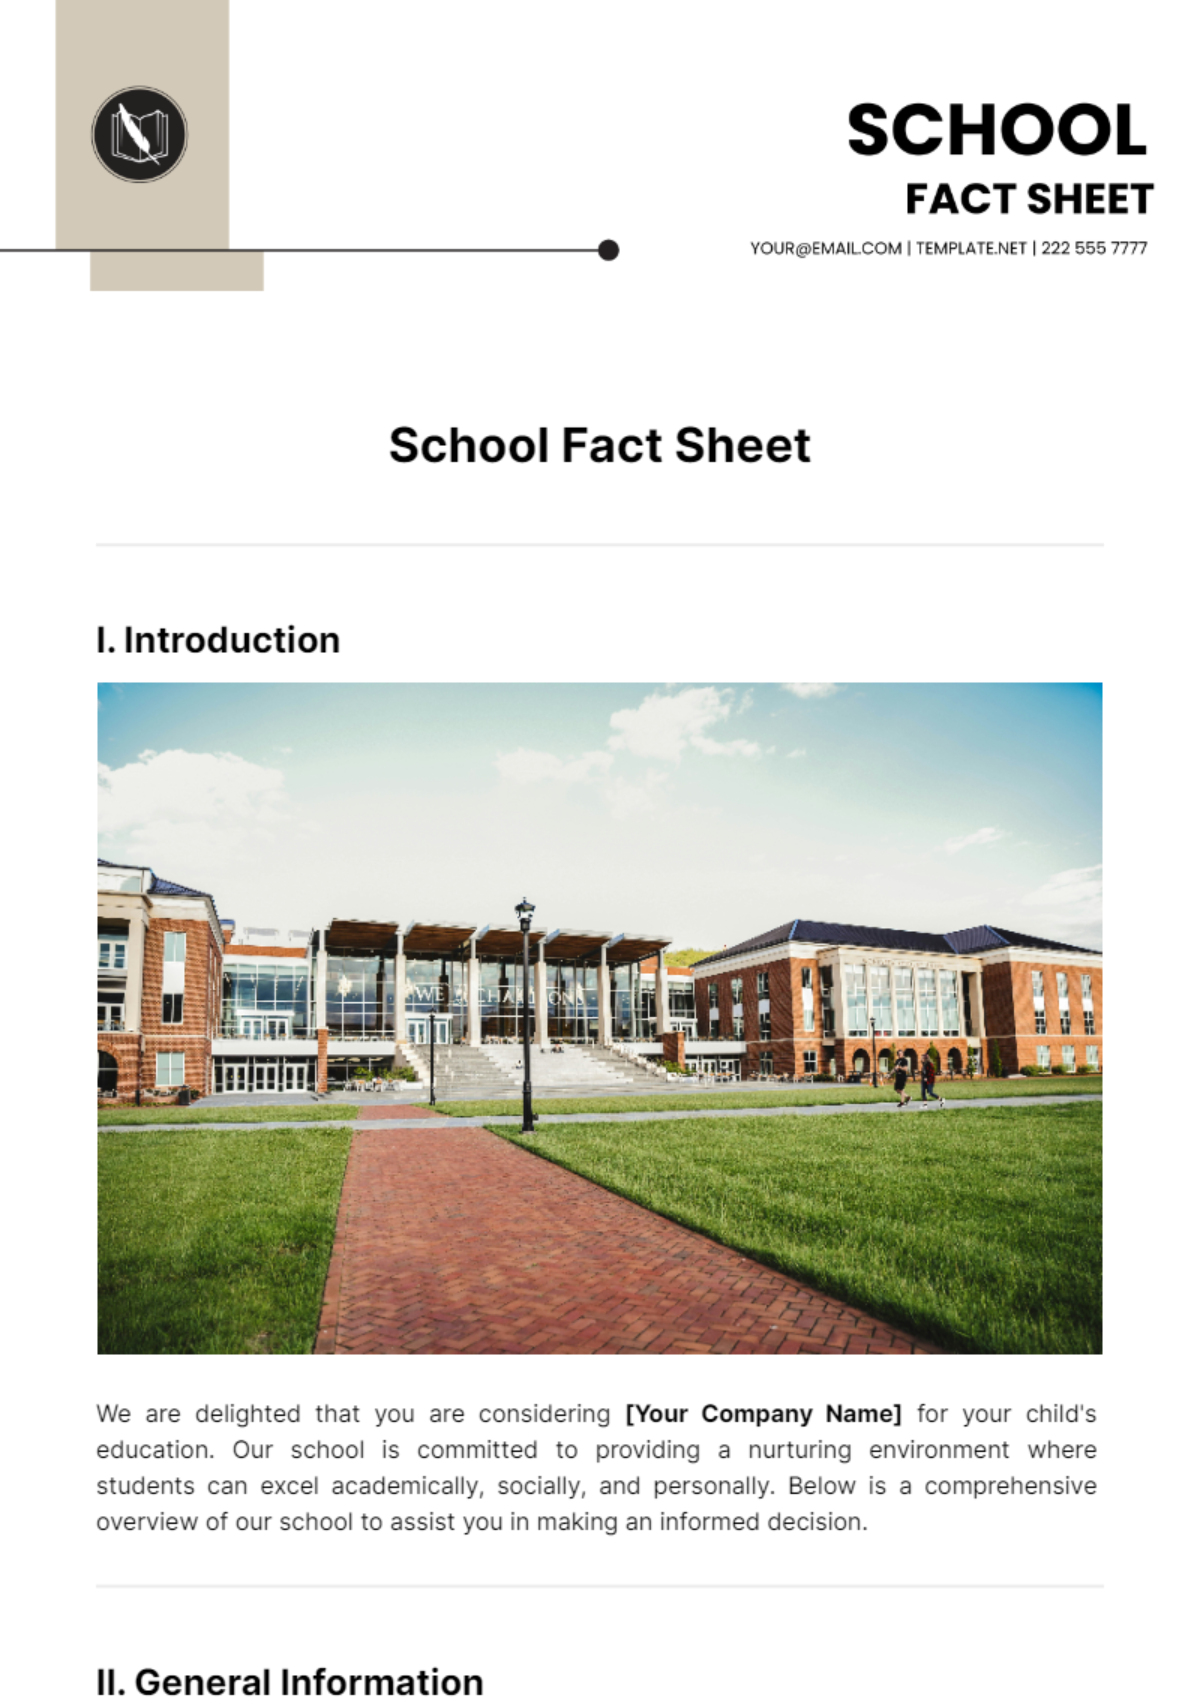 School Fact Sheet Template